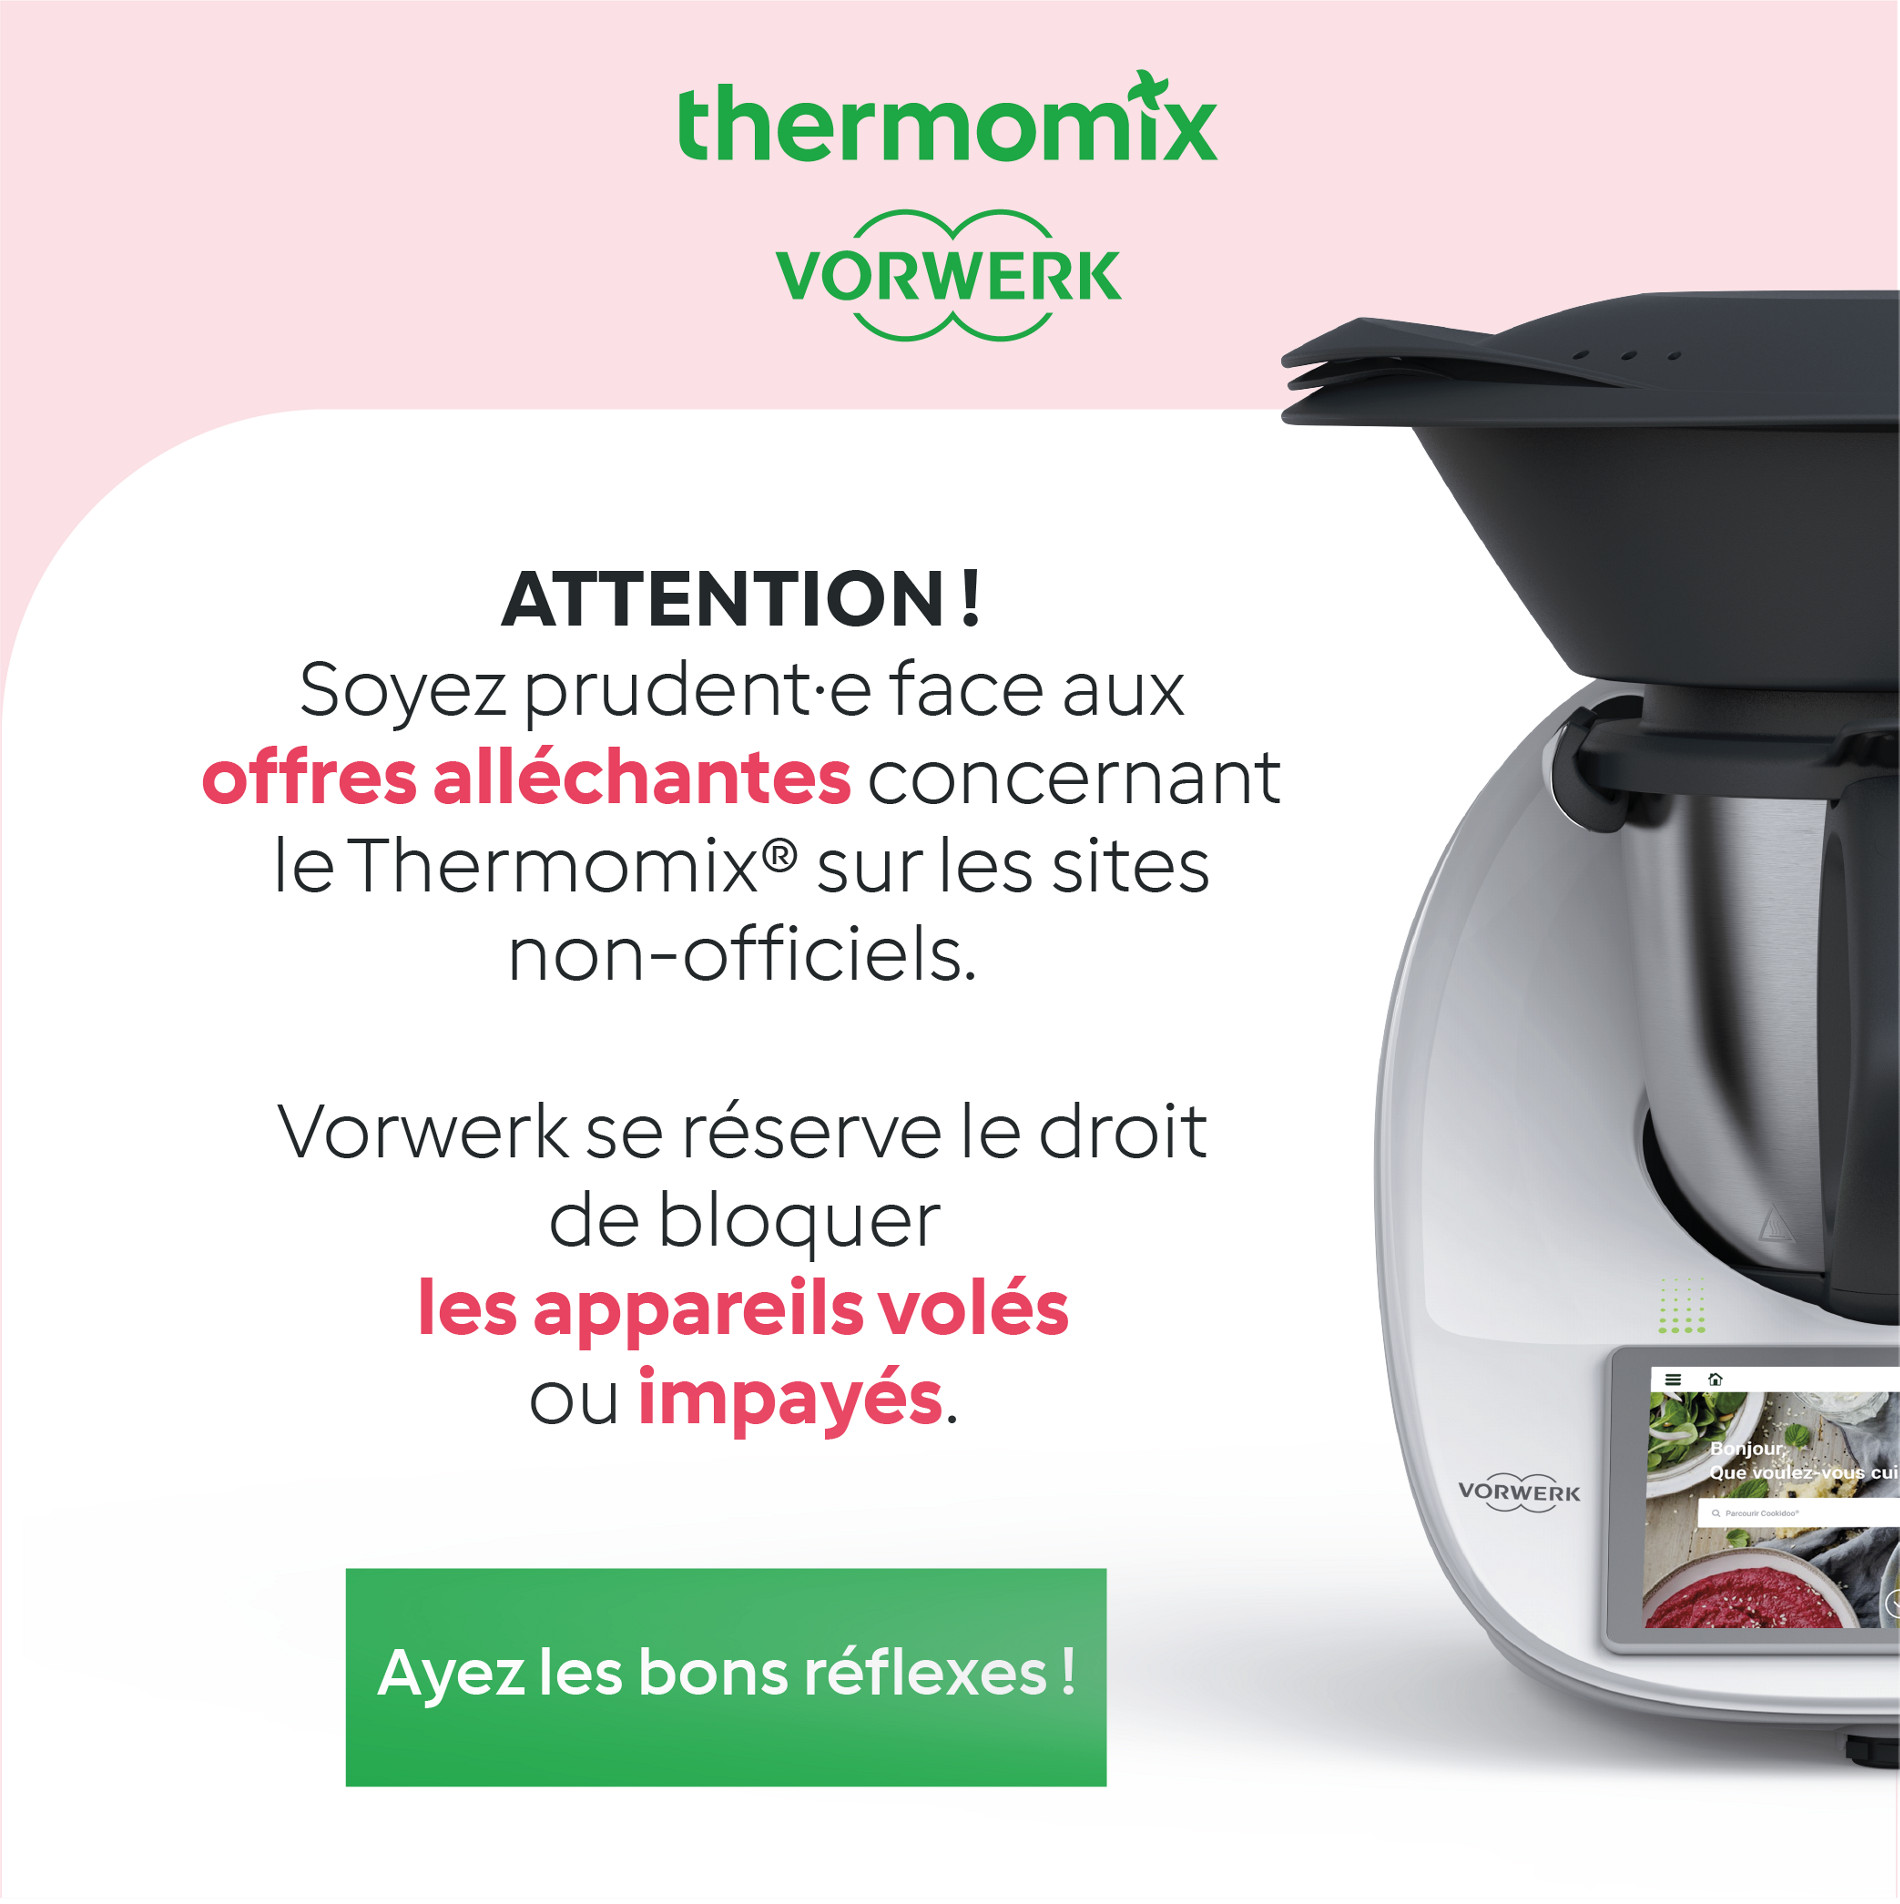 Thermomix Luxembourg - Chers clients, De plus en plus d'accessoires  Thermomix sont proposés par des fabricants externes en supplément ou en  remplacement des accessoires Vorwerk Thermomix d'origine. Nous vous  recommandons d'utiliser uniquement